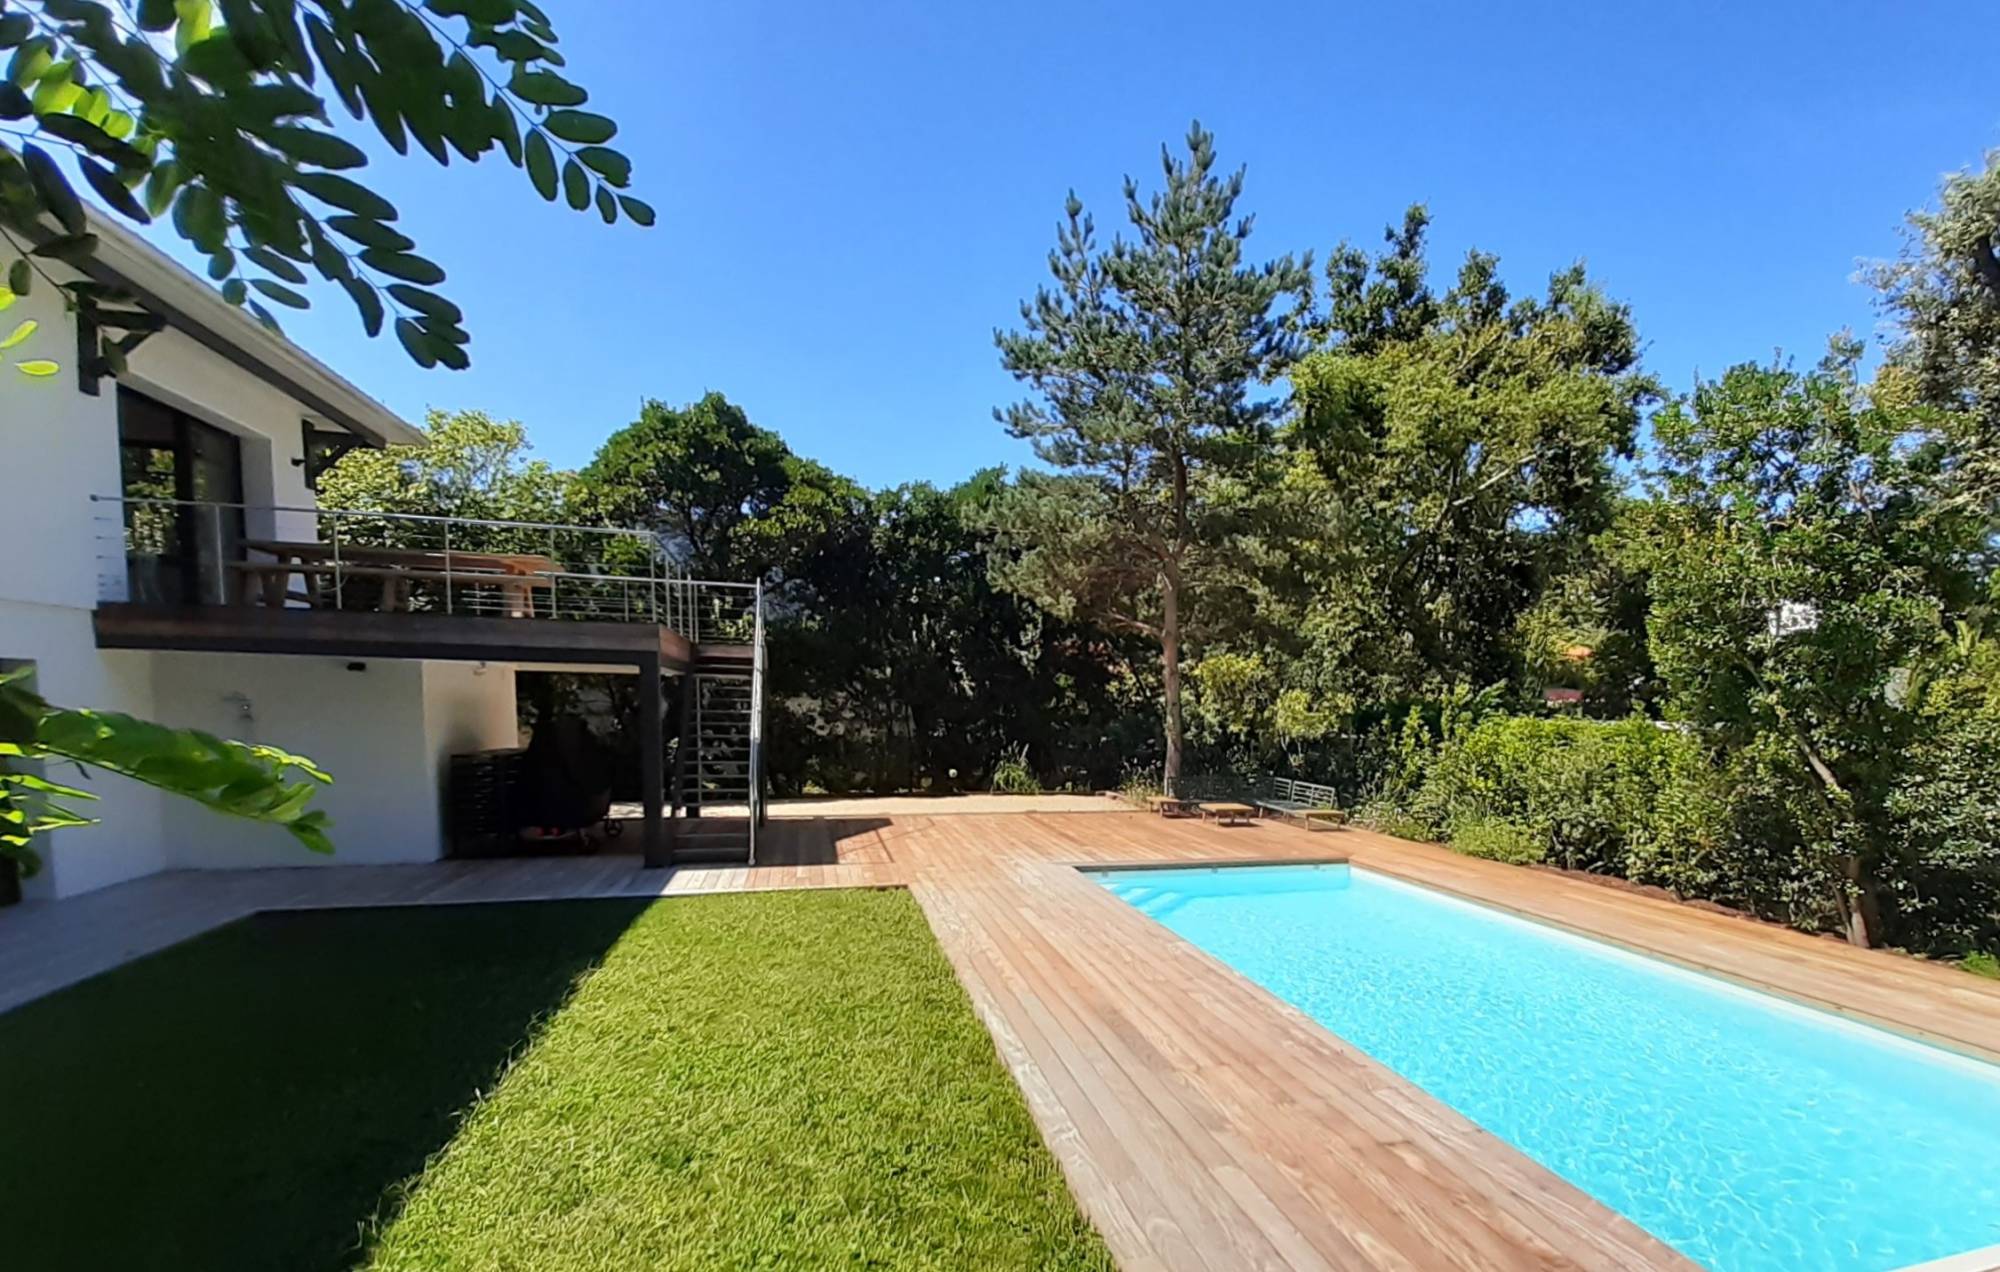 Location grande villa contemporaine 6 chambres avec piscine chauffée - Arcachon Le Moulleau